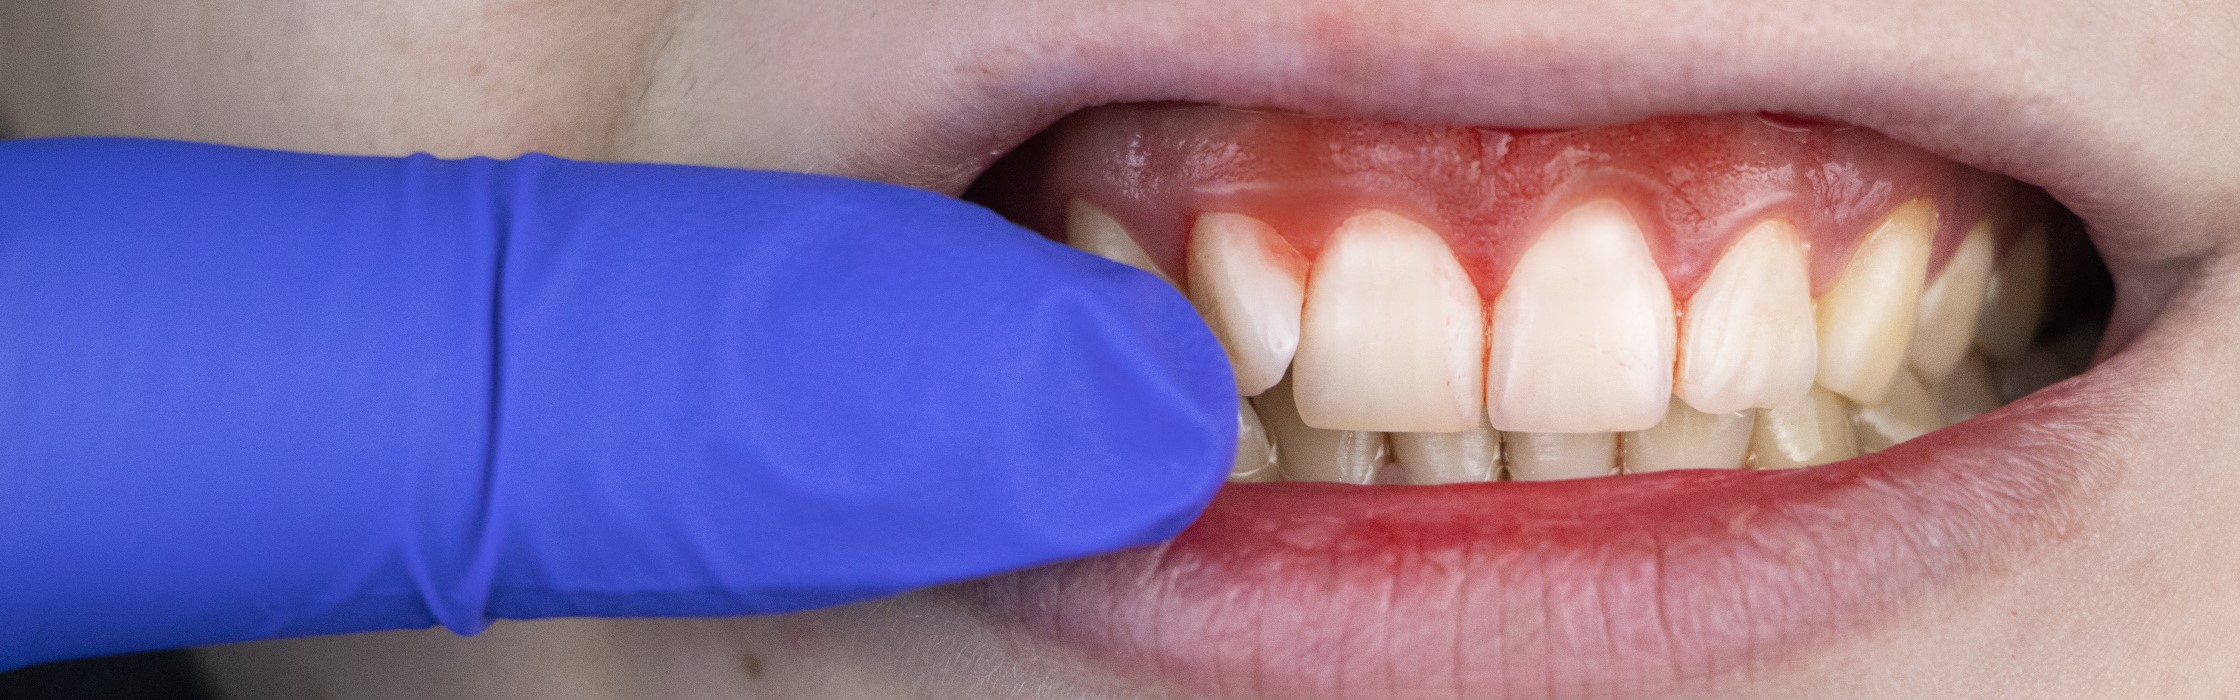 Parodontitis – Prävention und Behandlung der Volkskrankheit bei Ihrem Zahnarzt